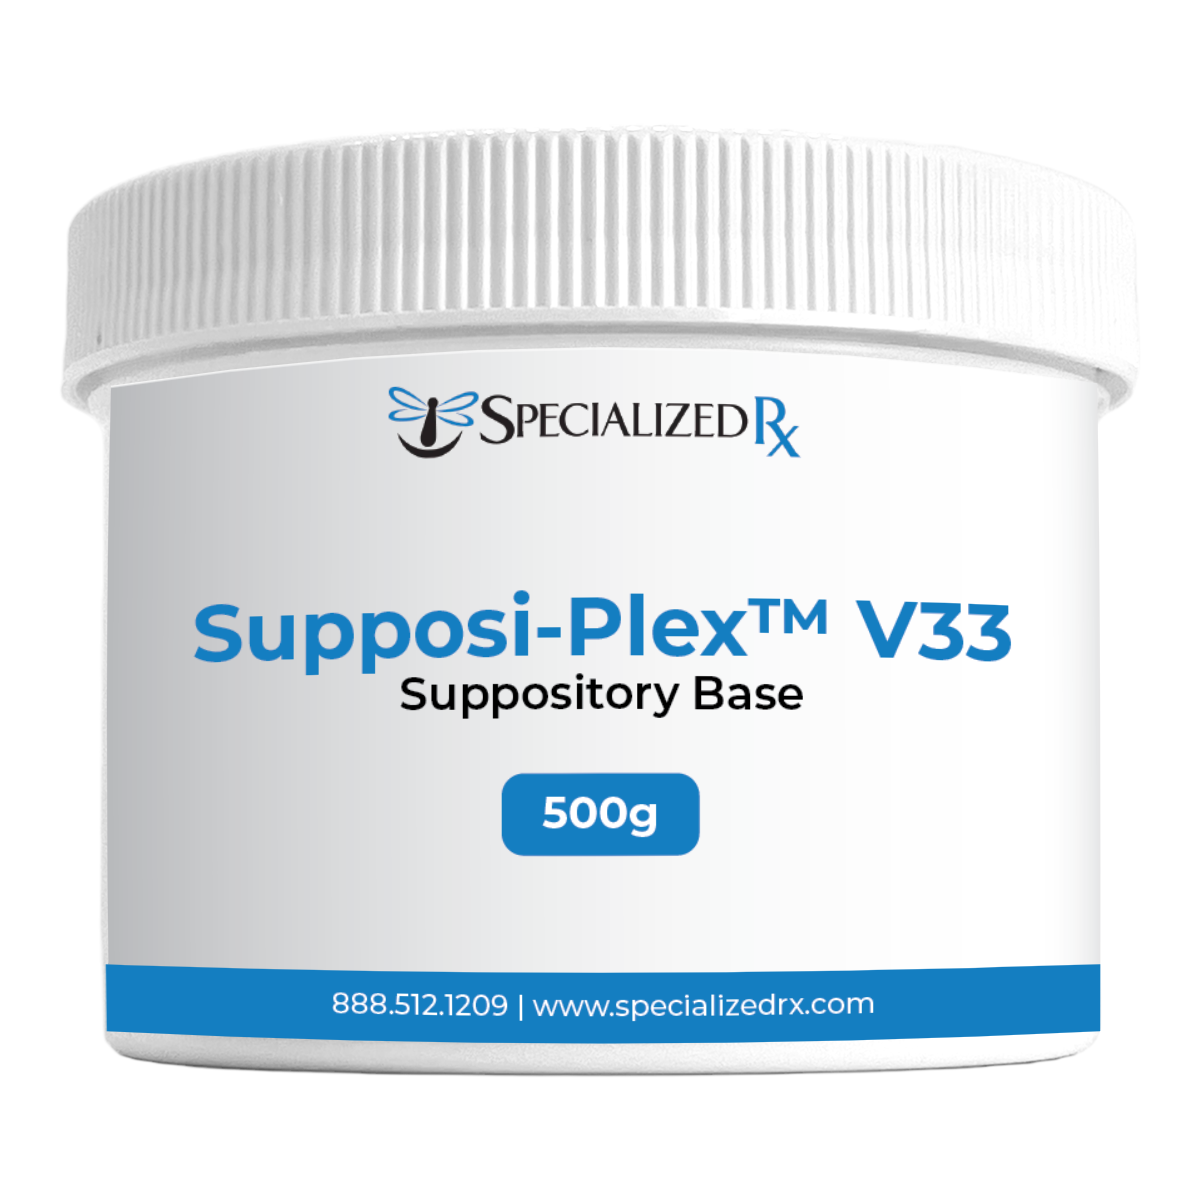 Supposi-Plex™ V33 Suppository Base